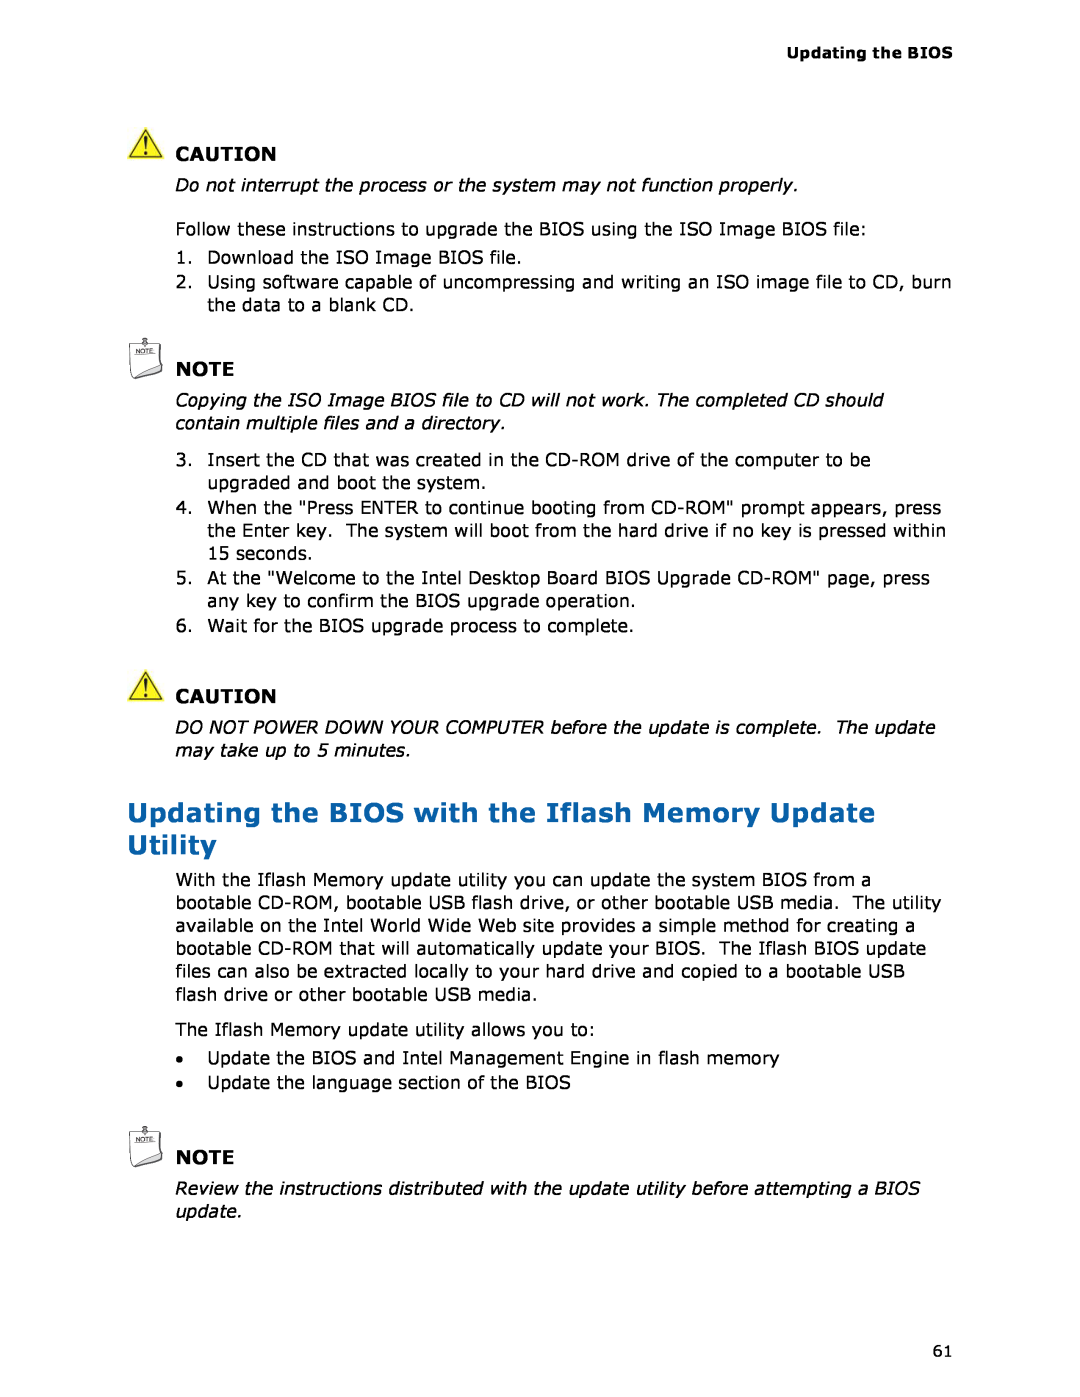 Intel DG33FB manual Download the ISO Image BIOS file 